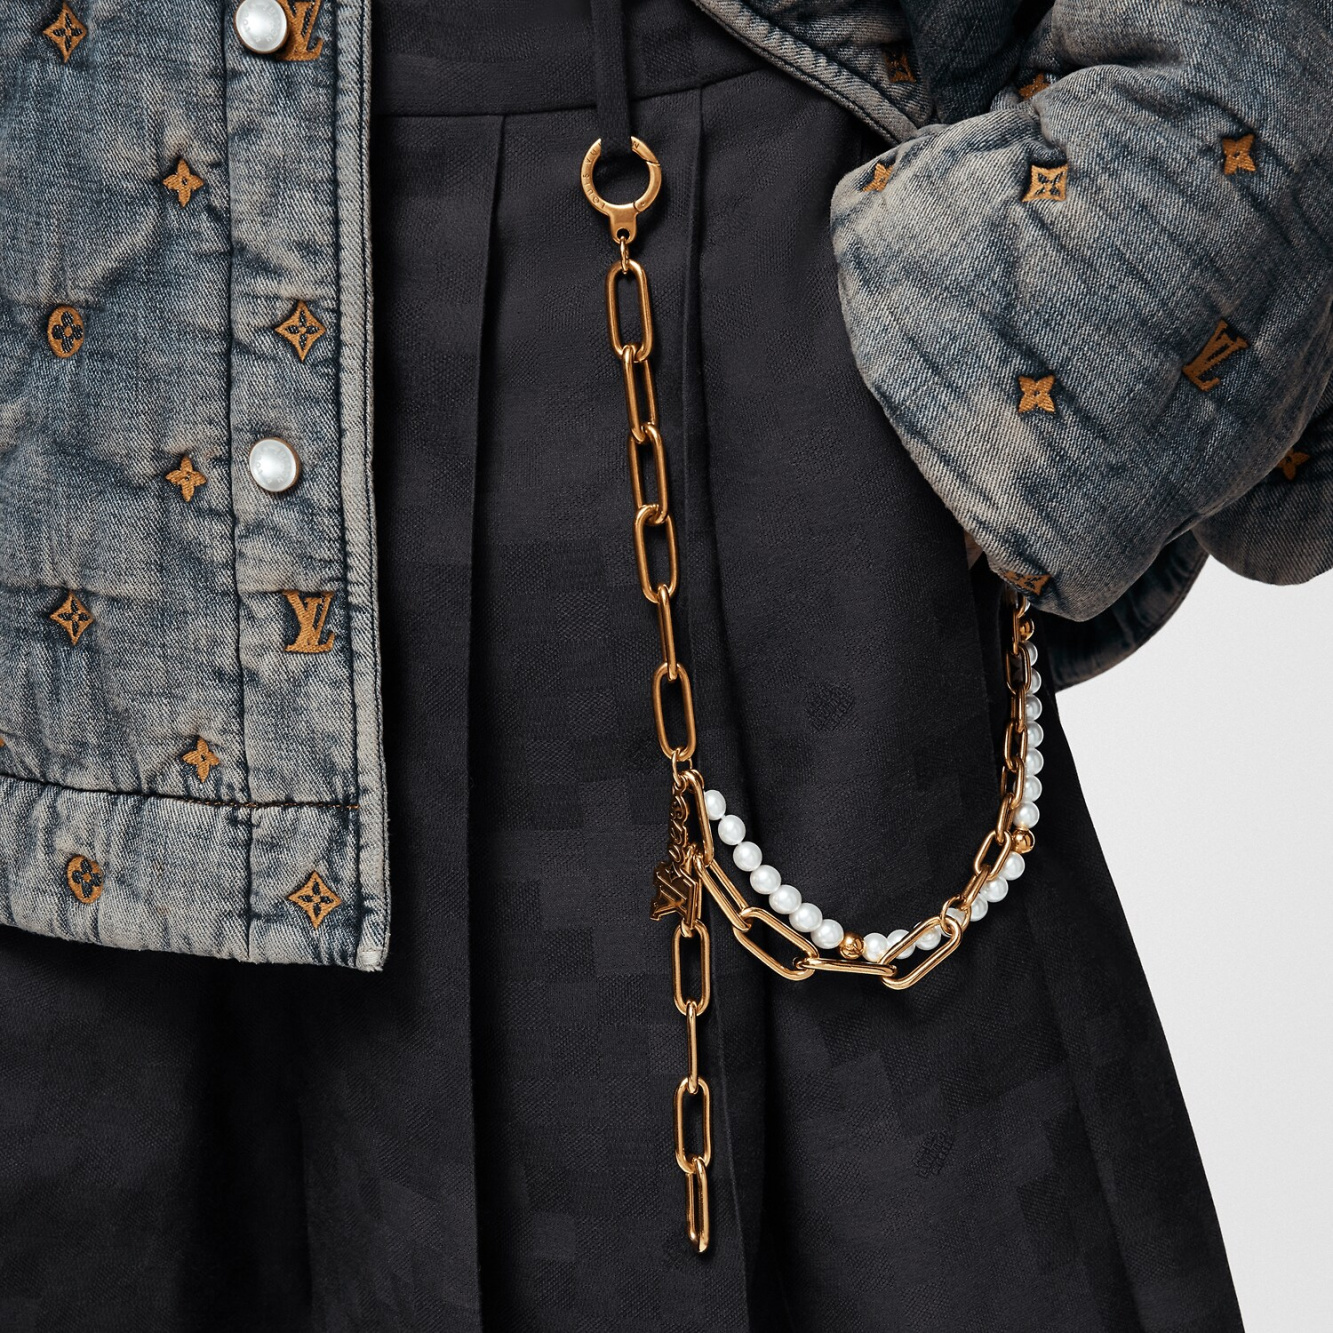 Louis Vuitton Chain Belt Pearls Bag Charm